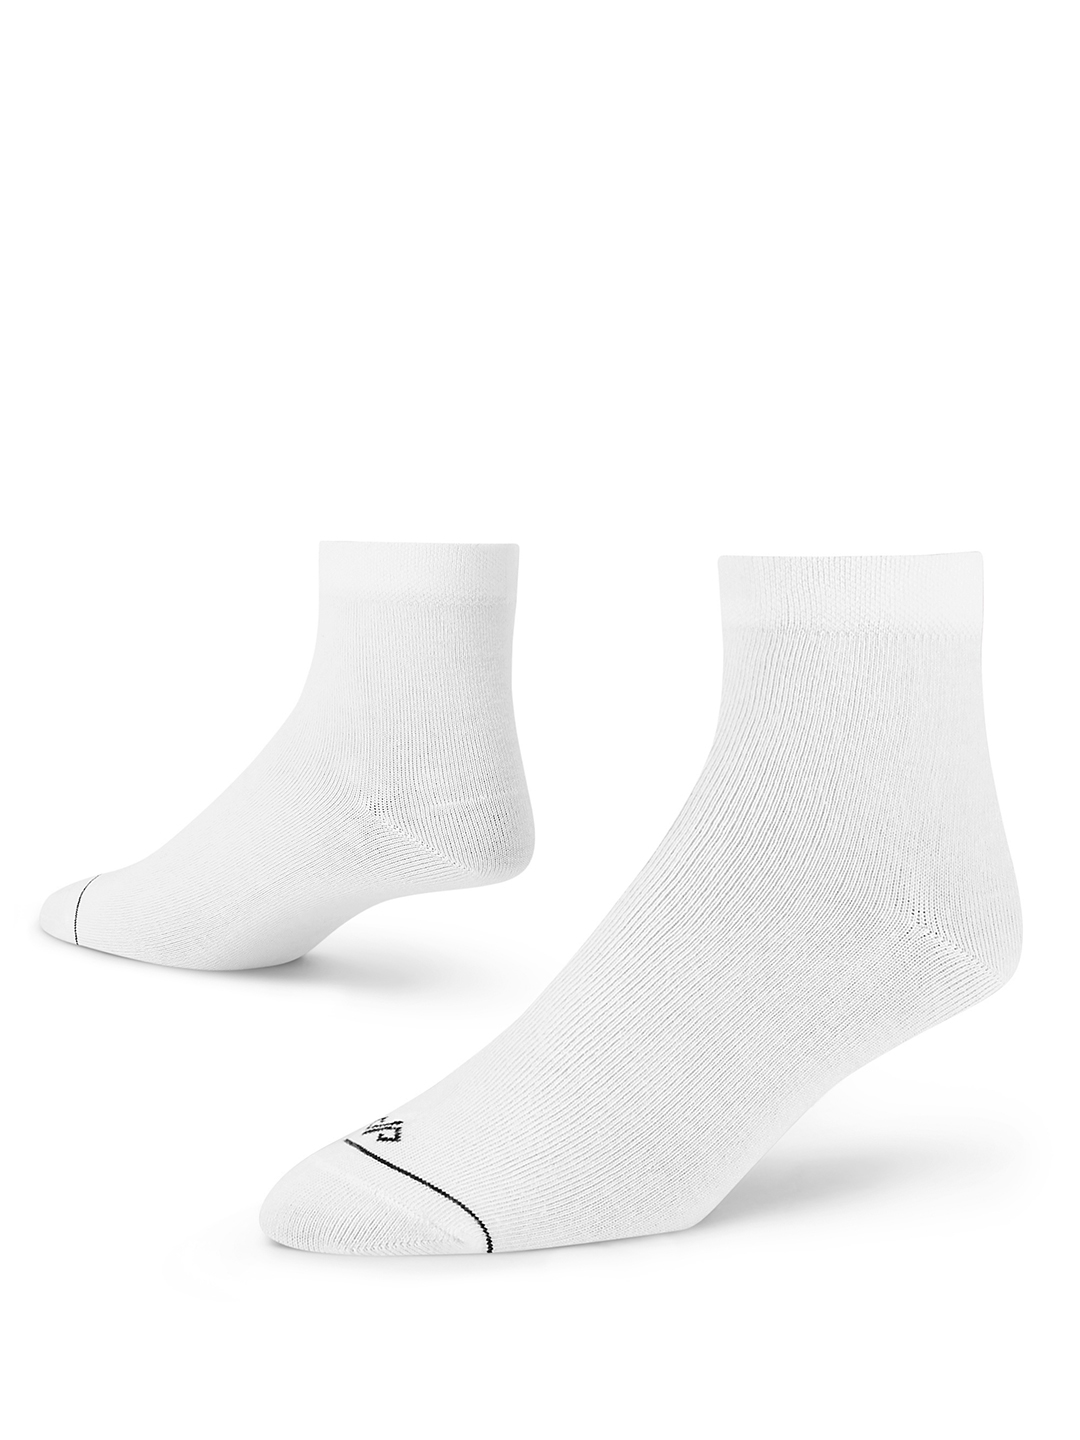 Dynamocks White Men Ankle Length Socks